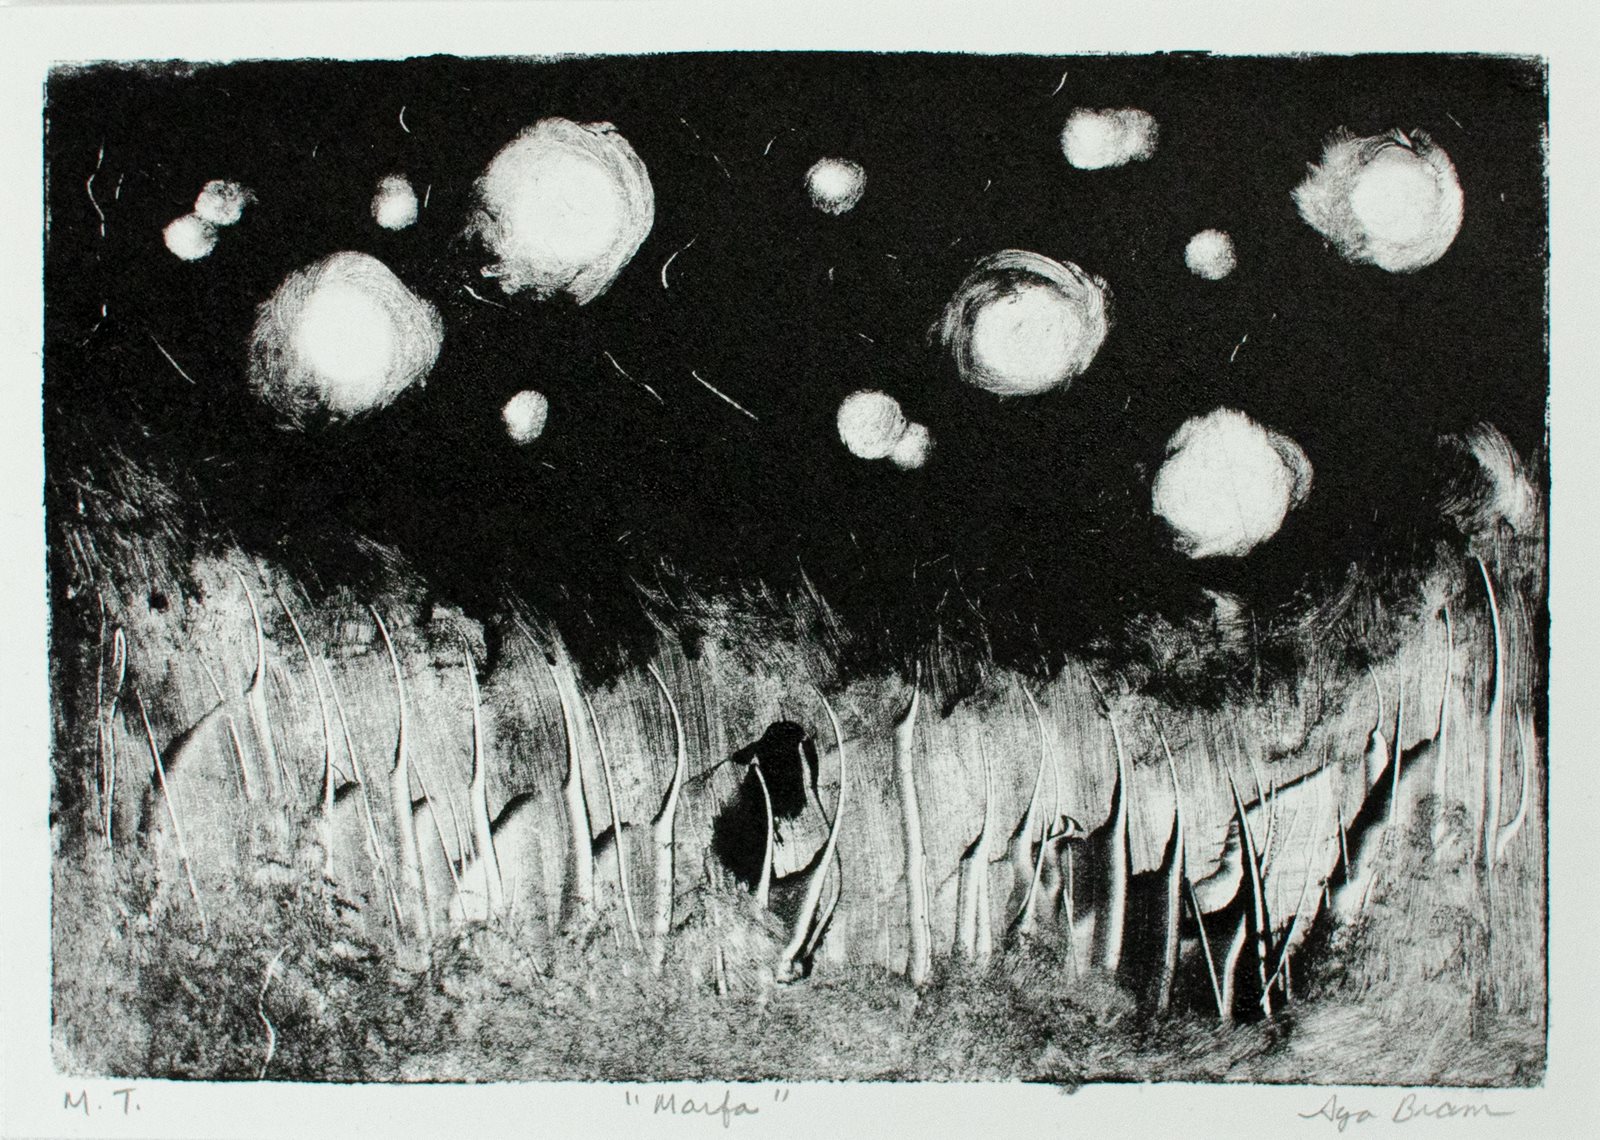 Aya Bram, "Marfa," Monotype Print